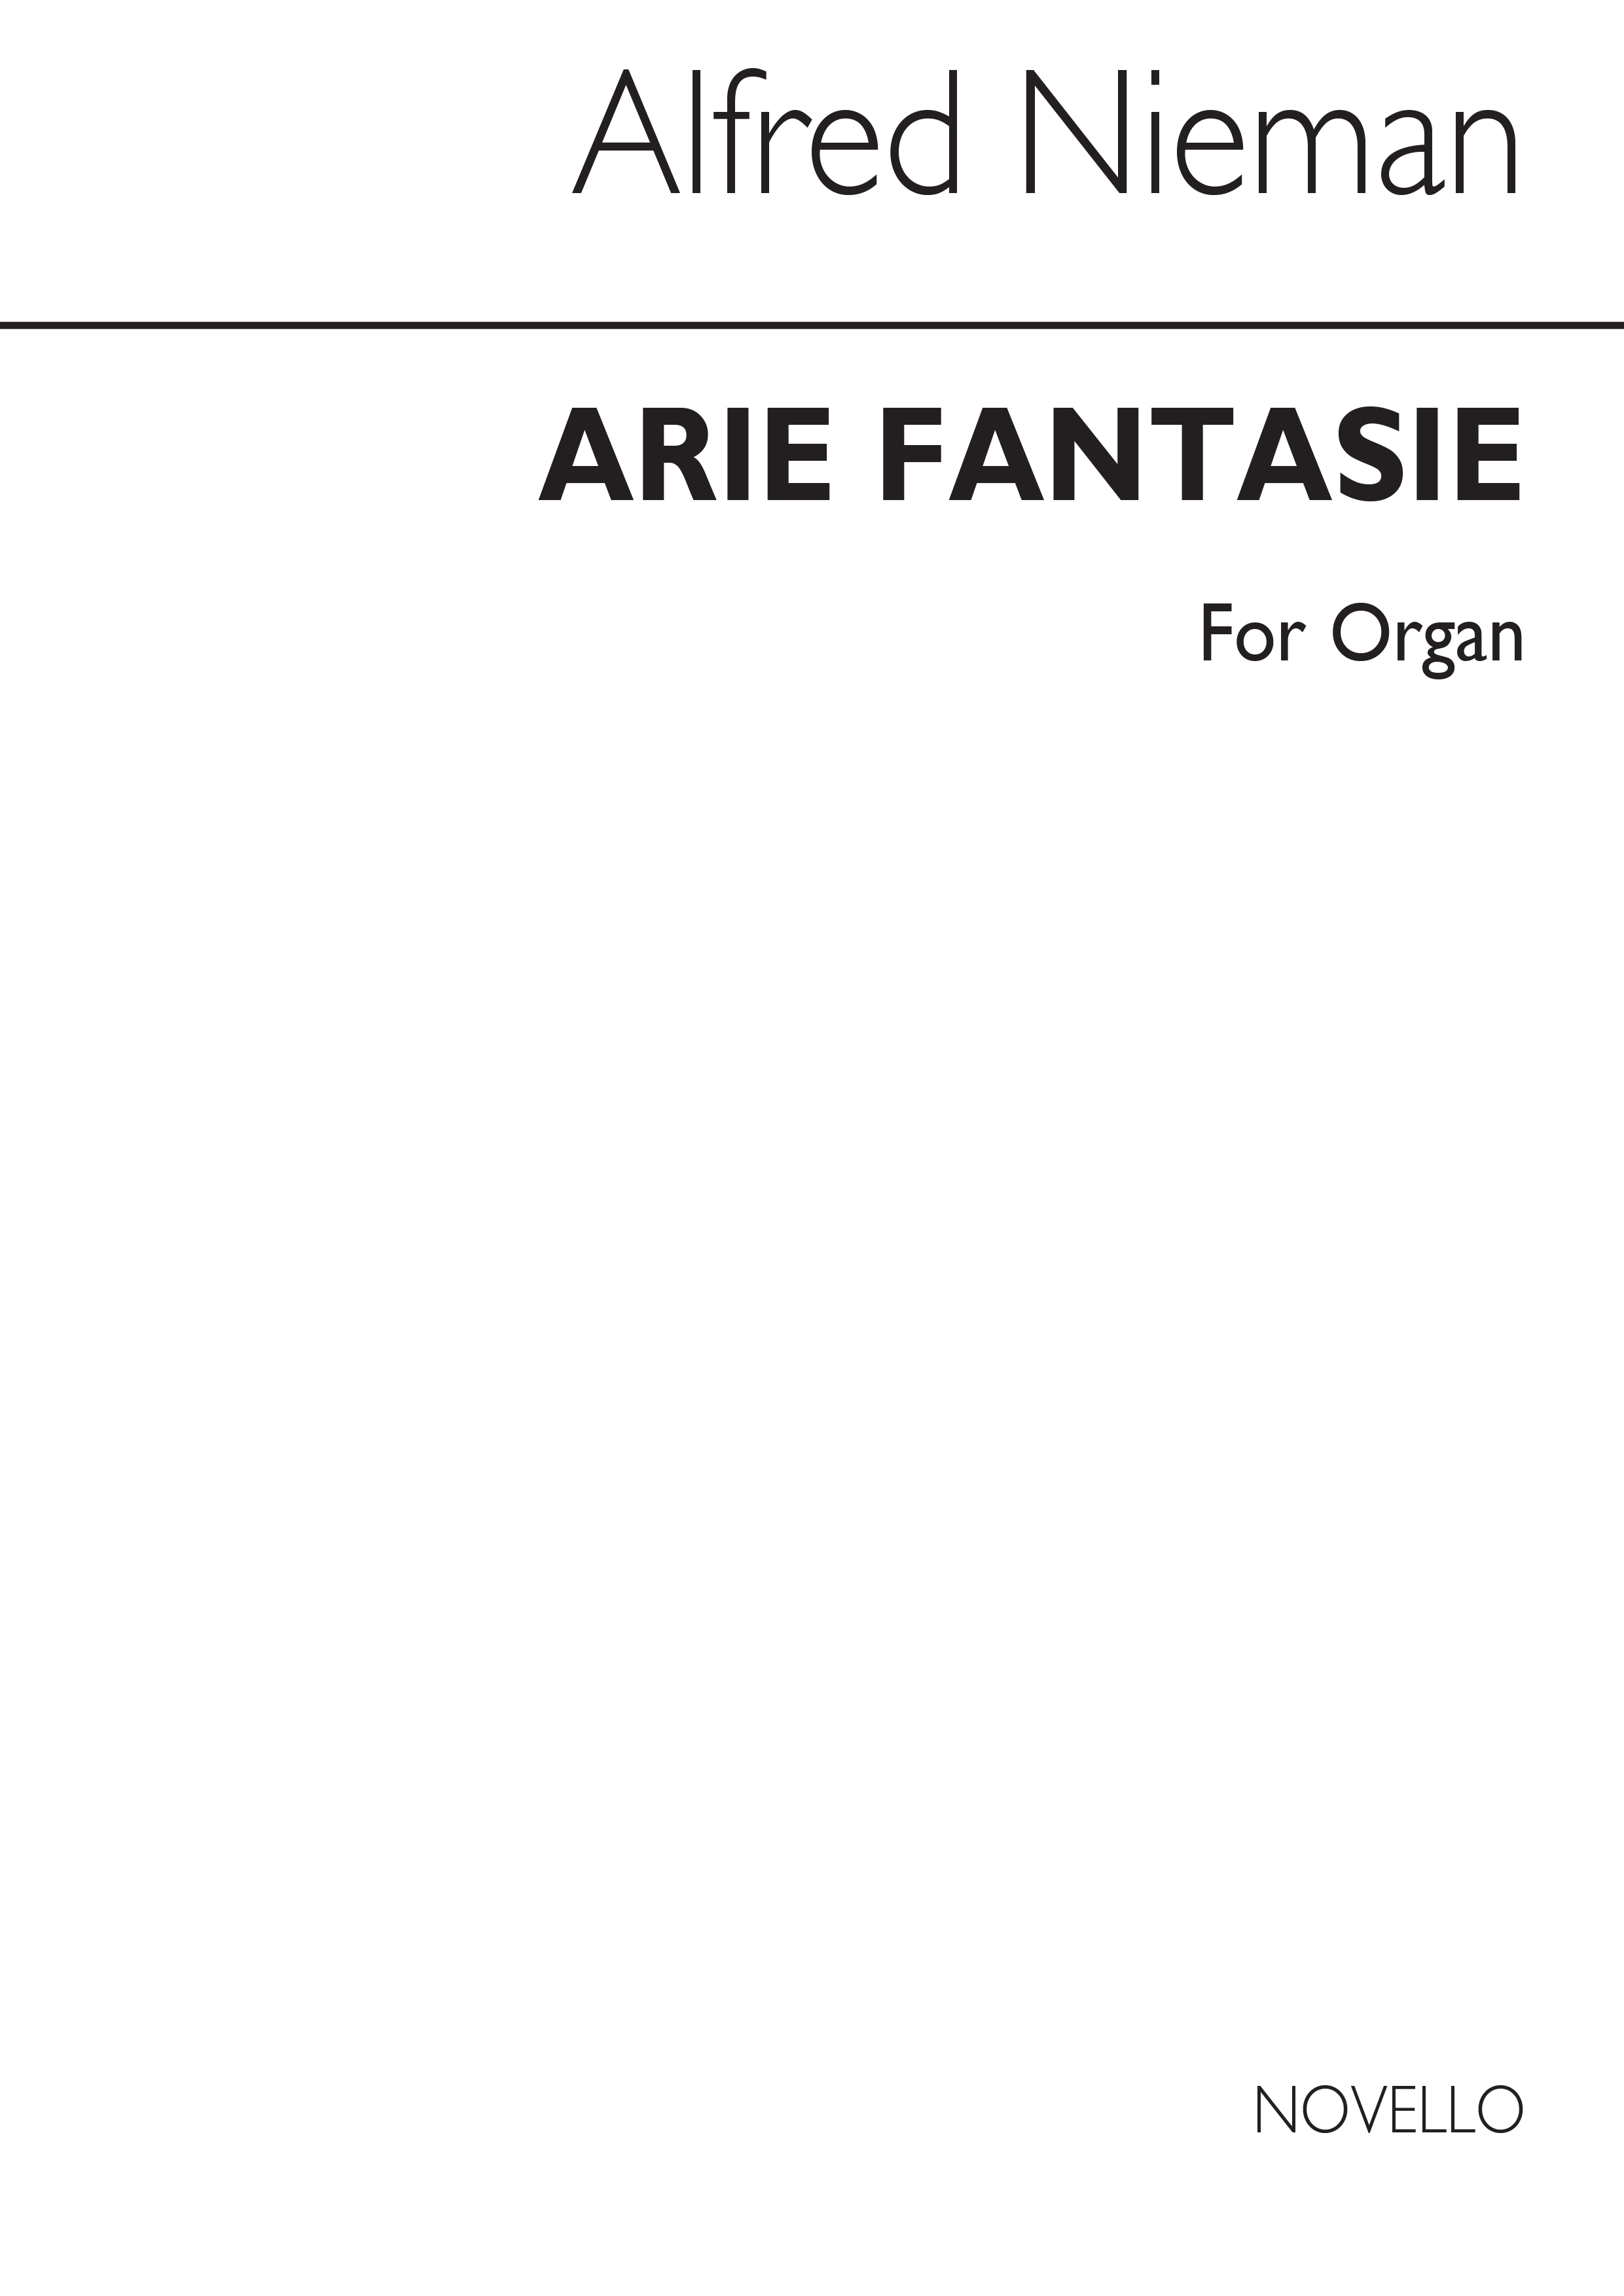 Alfred Nieman: Arie-Fantasie For Organ